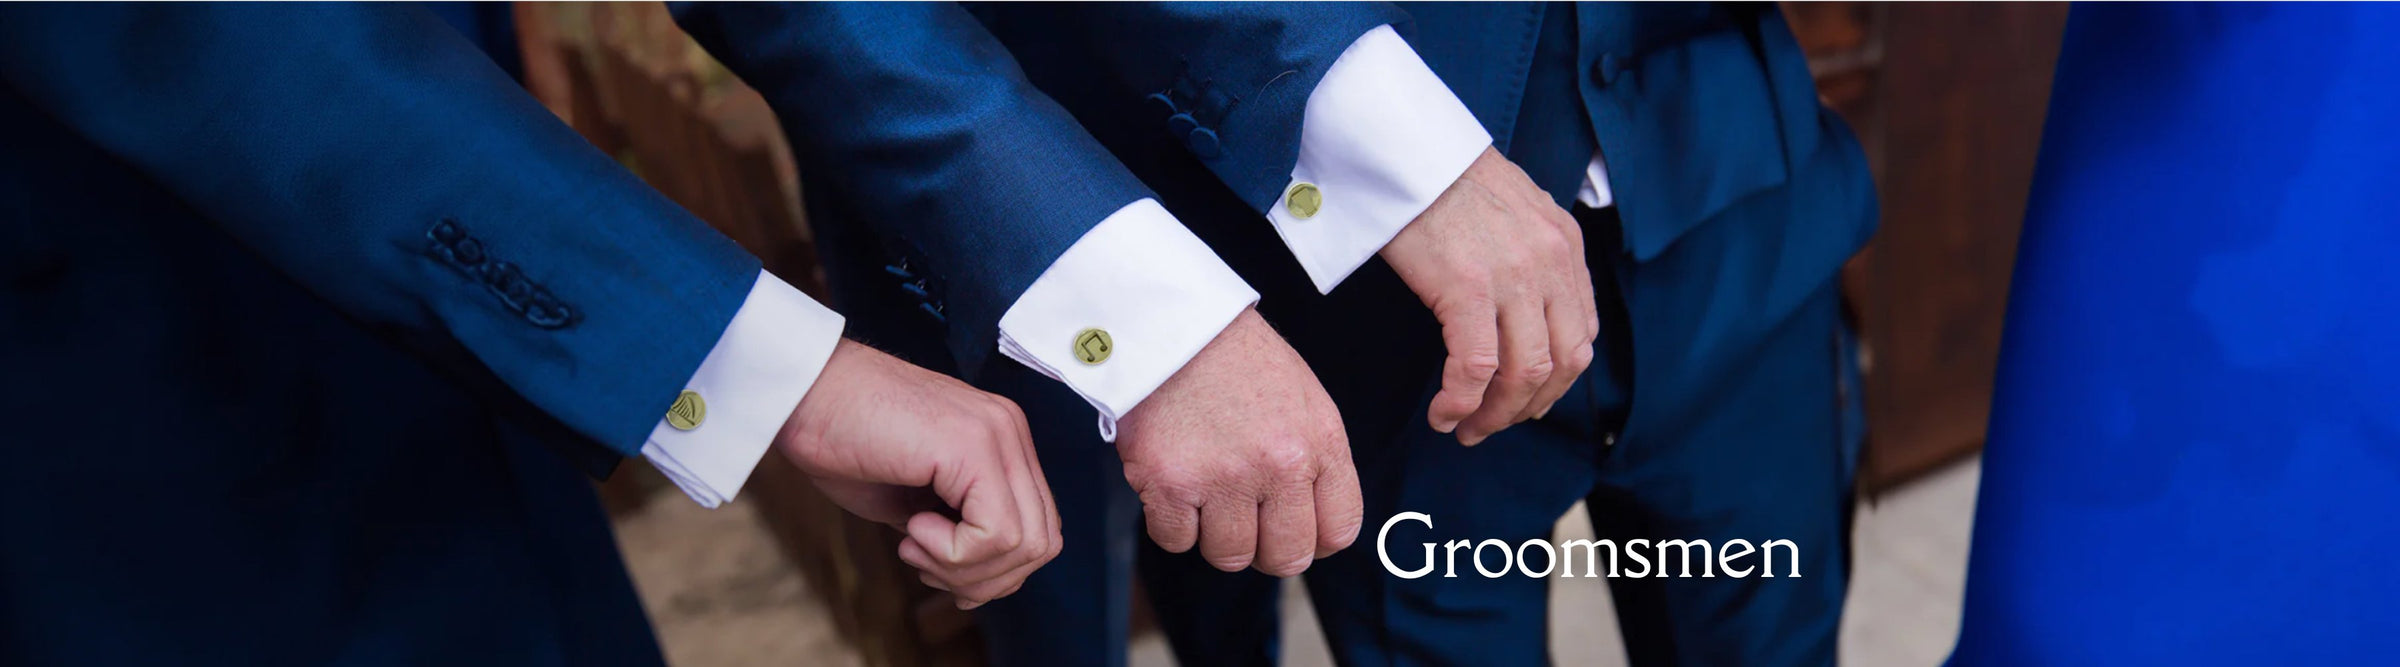 groomsmen gift ideas banner